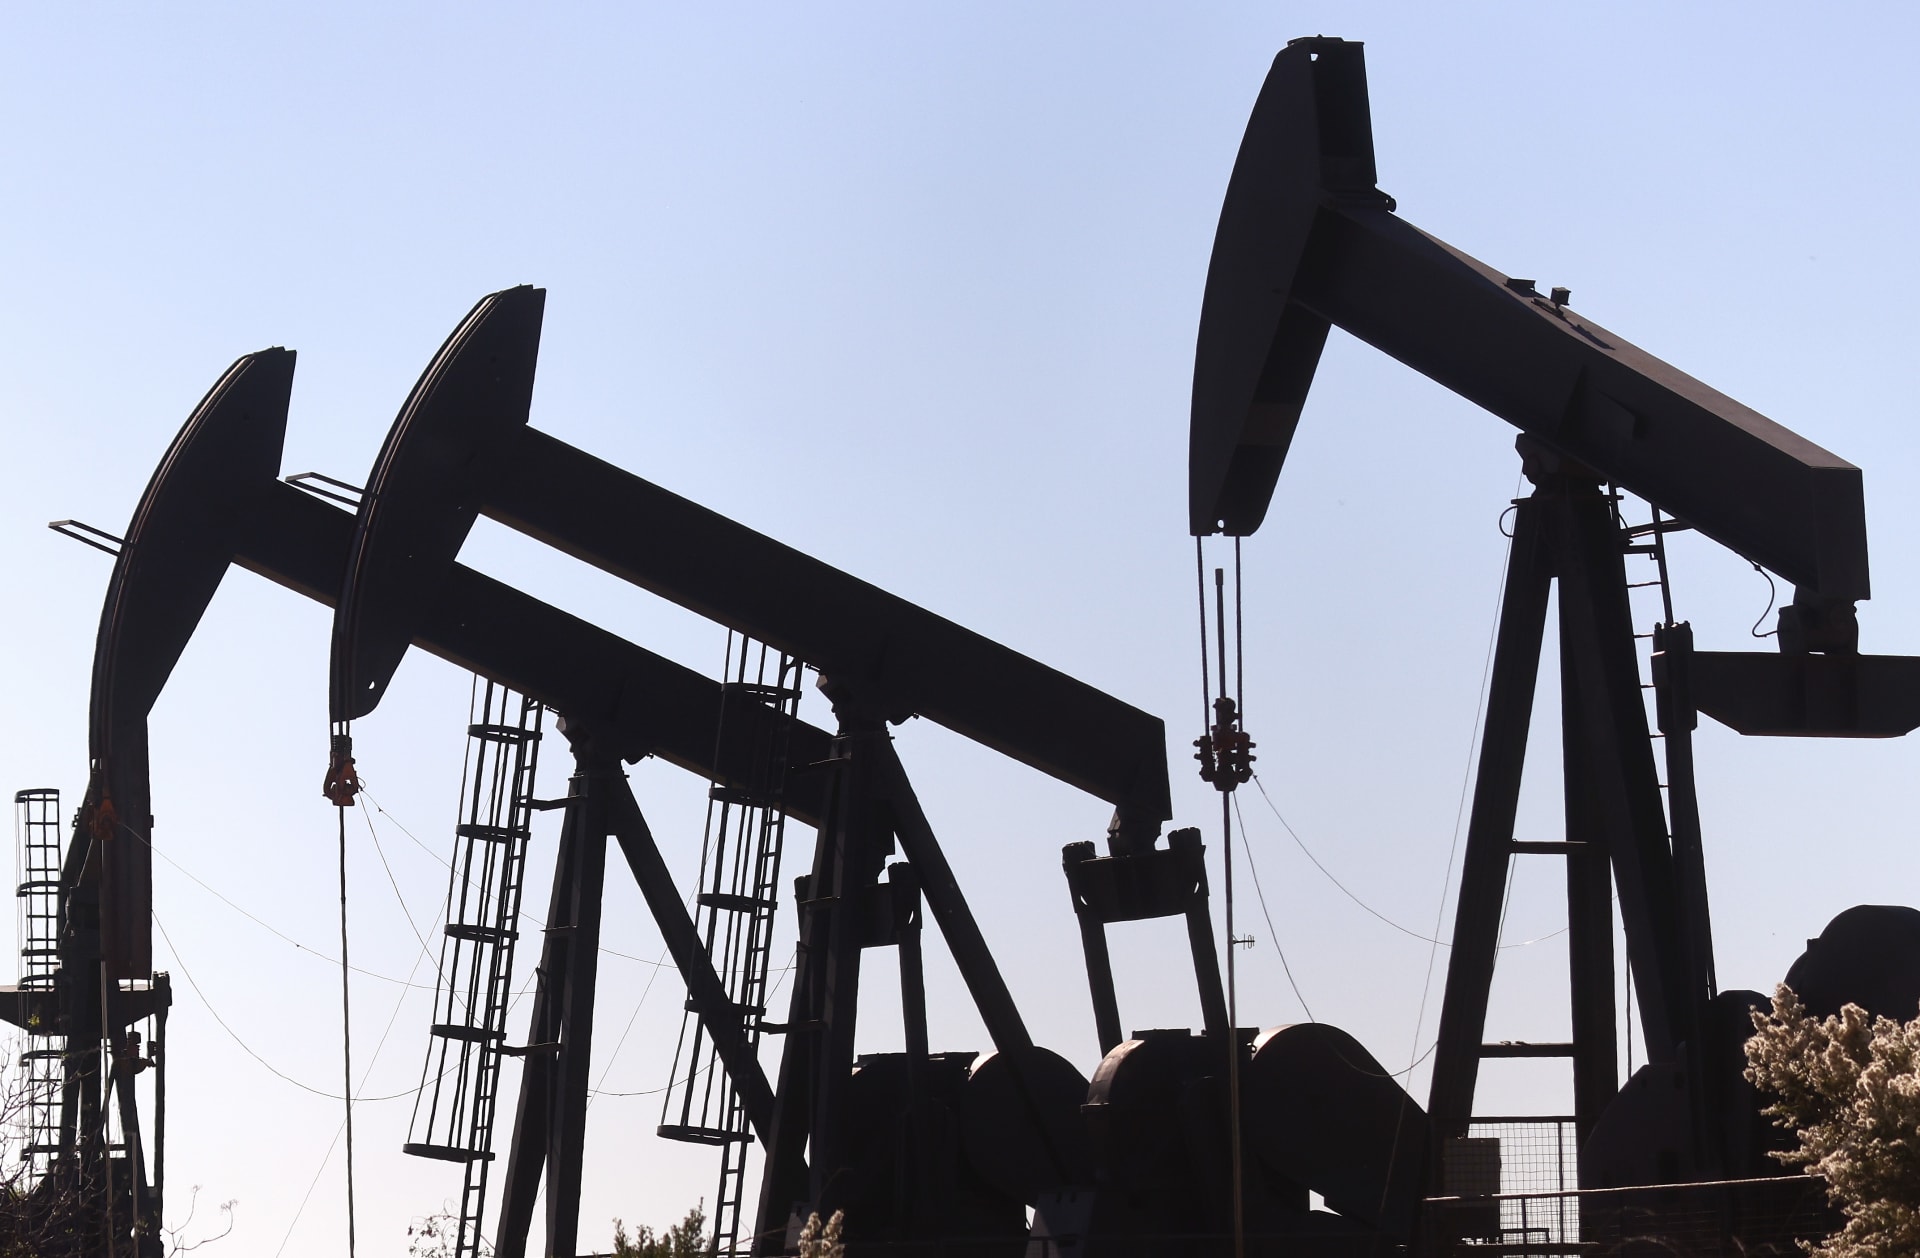  الولايات المتحدة تعمل لزيادة حجم النفط الخام 